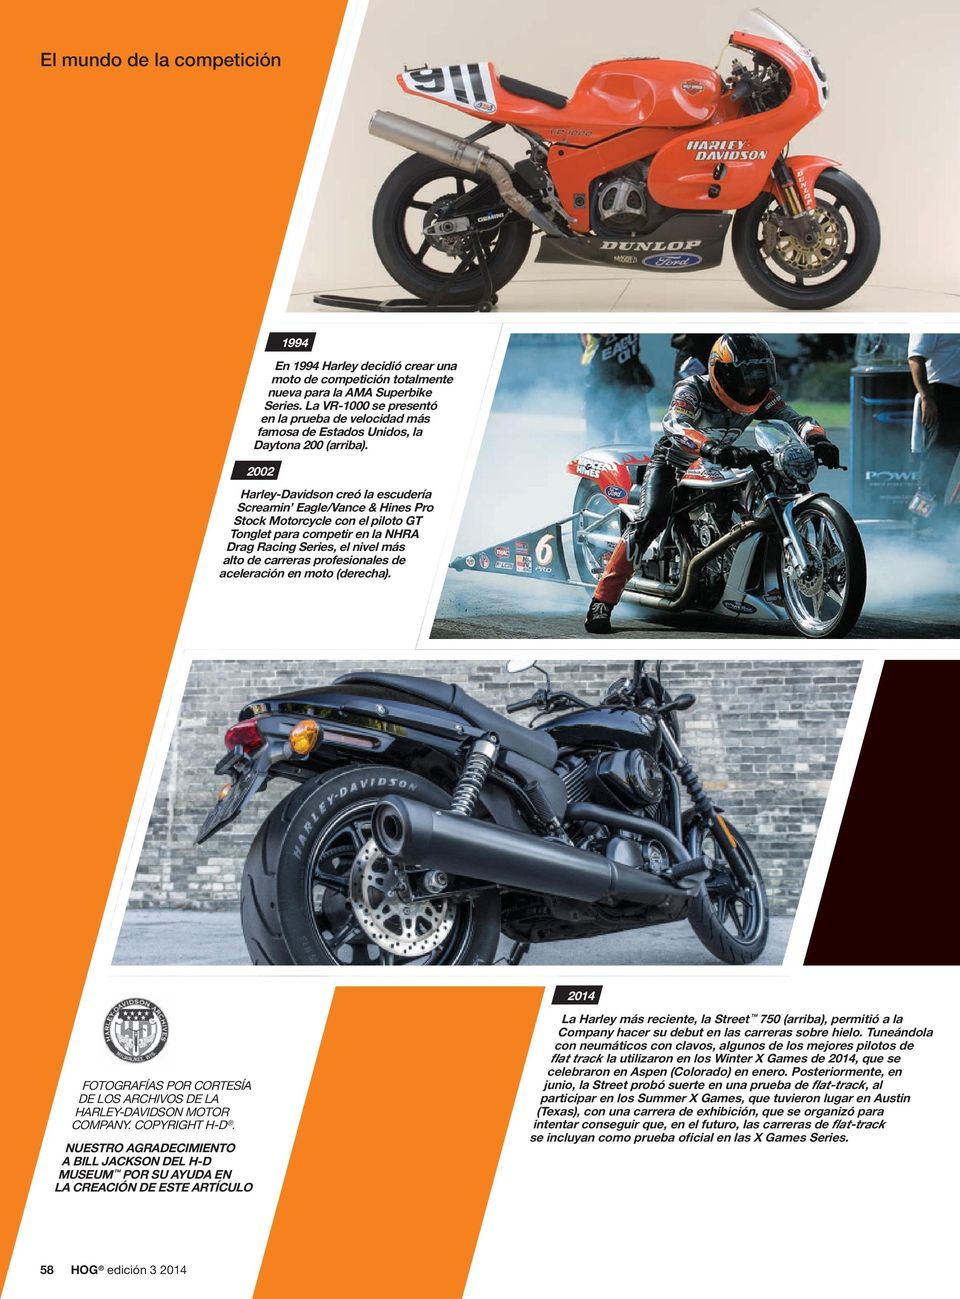 2002 Harley-Davidson creó la escudería Screamin Eagle/Vance & Hines Pro Stock Motorcycle con el piloto GT Tonglet para competir en la NHRA Drag Racing Series, el nivel más alto de carreras